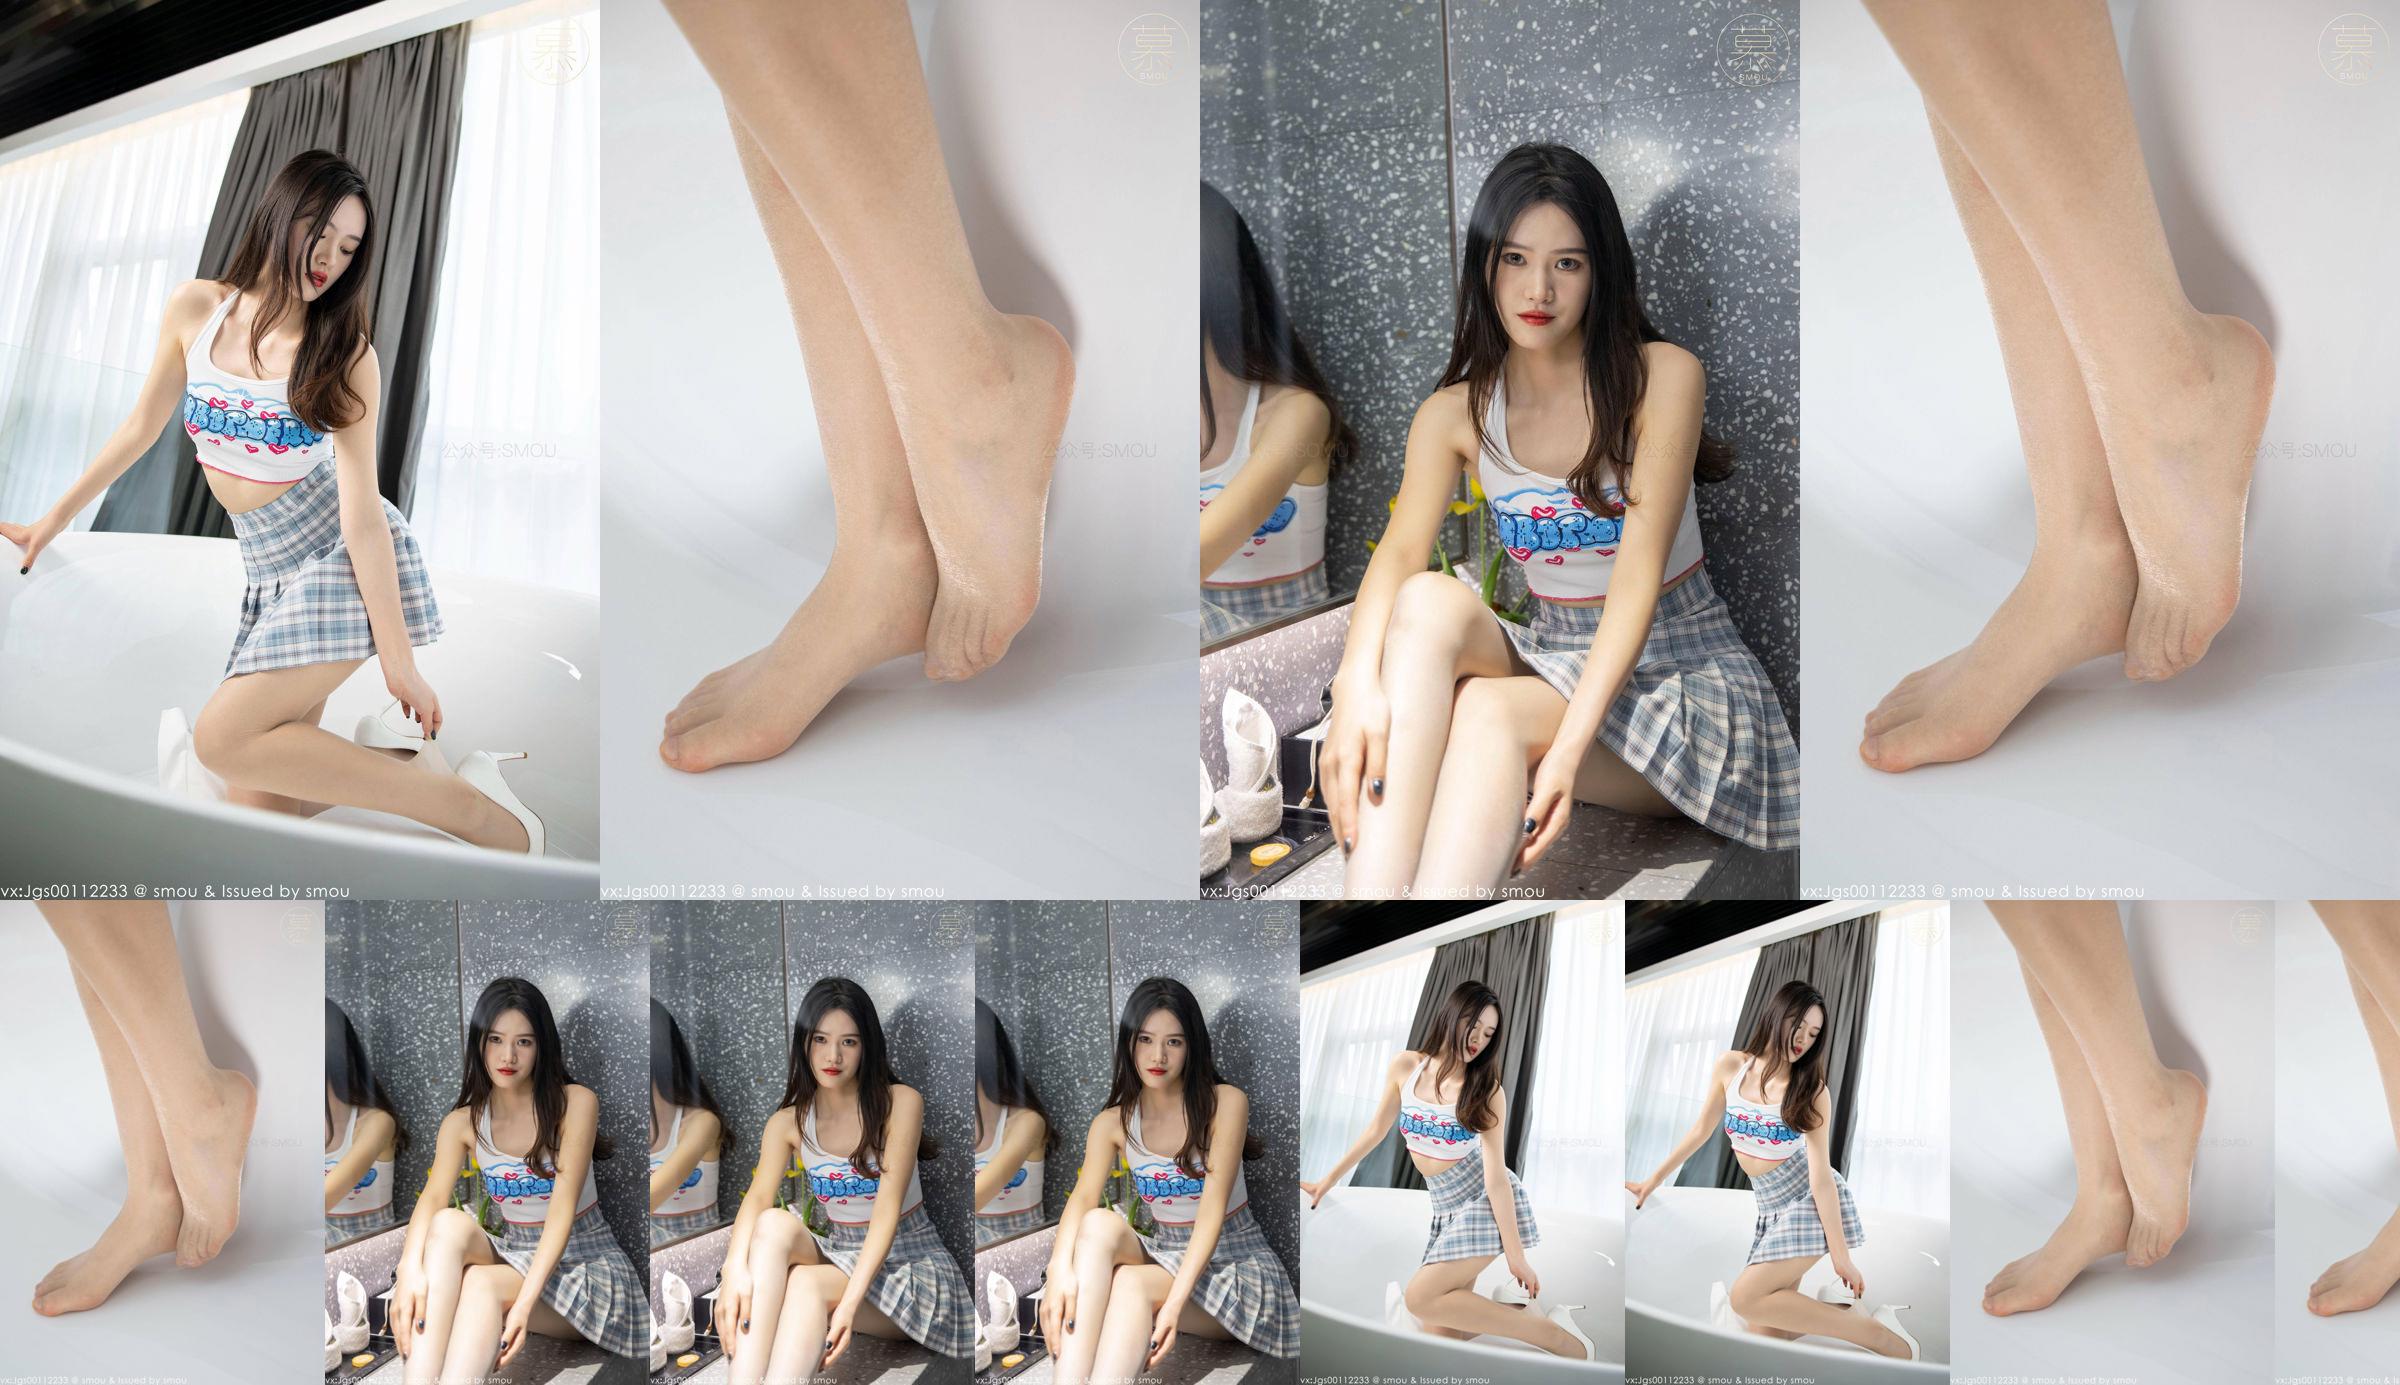 [SMOU] Honey Series M014 Nieuw model Weiwei Panty Mooie beenbedekking No.6c1214 Pagina 5